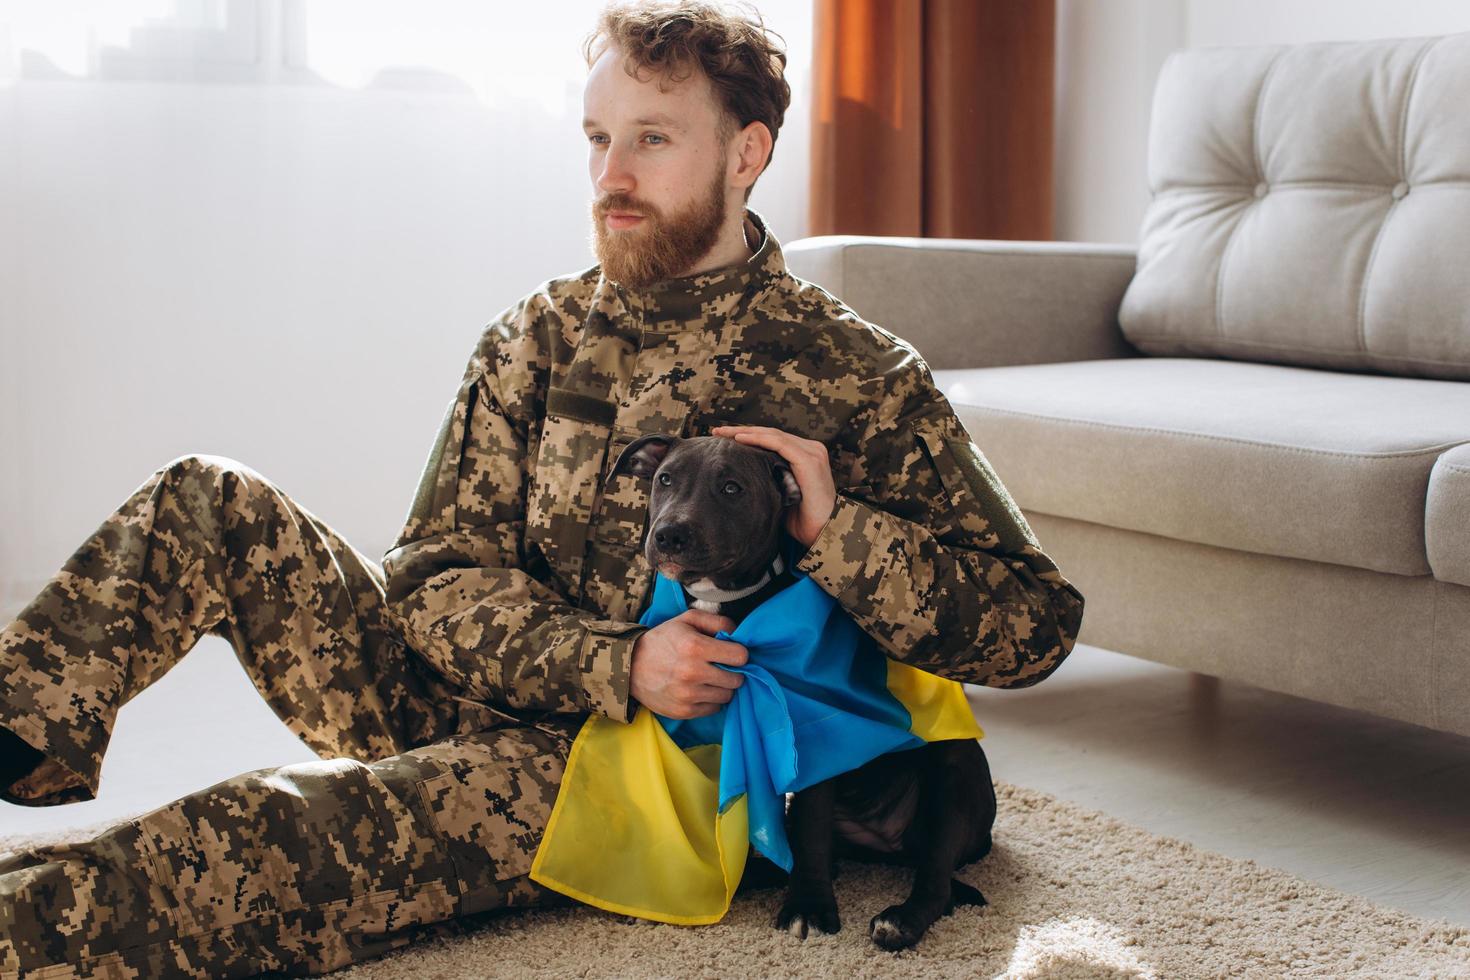 soldado ucraniano abrazando y envolviendo la bandera ucraniana de su fiel amigo alrededor de un perro amstaff en la oficina foto